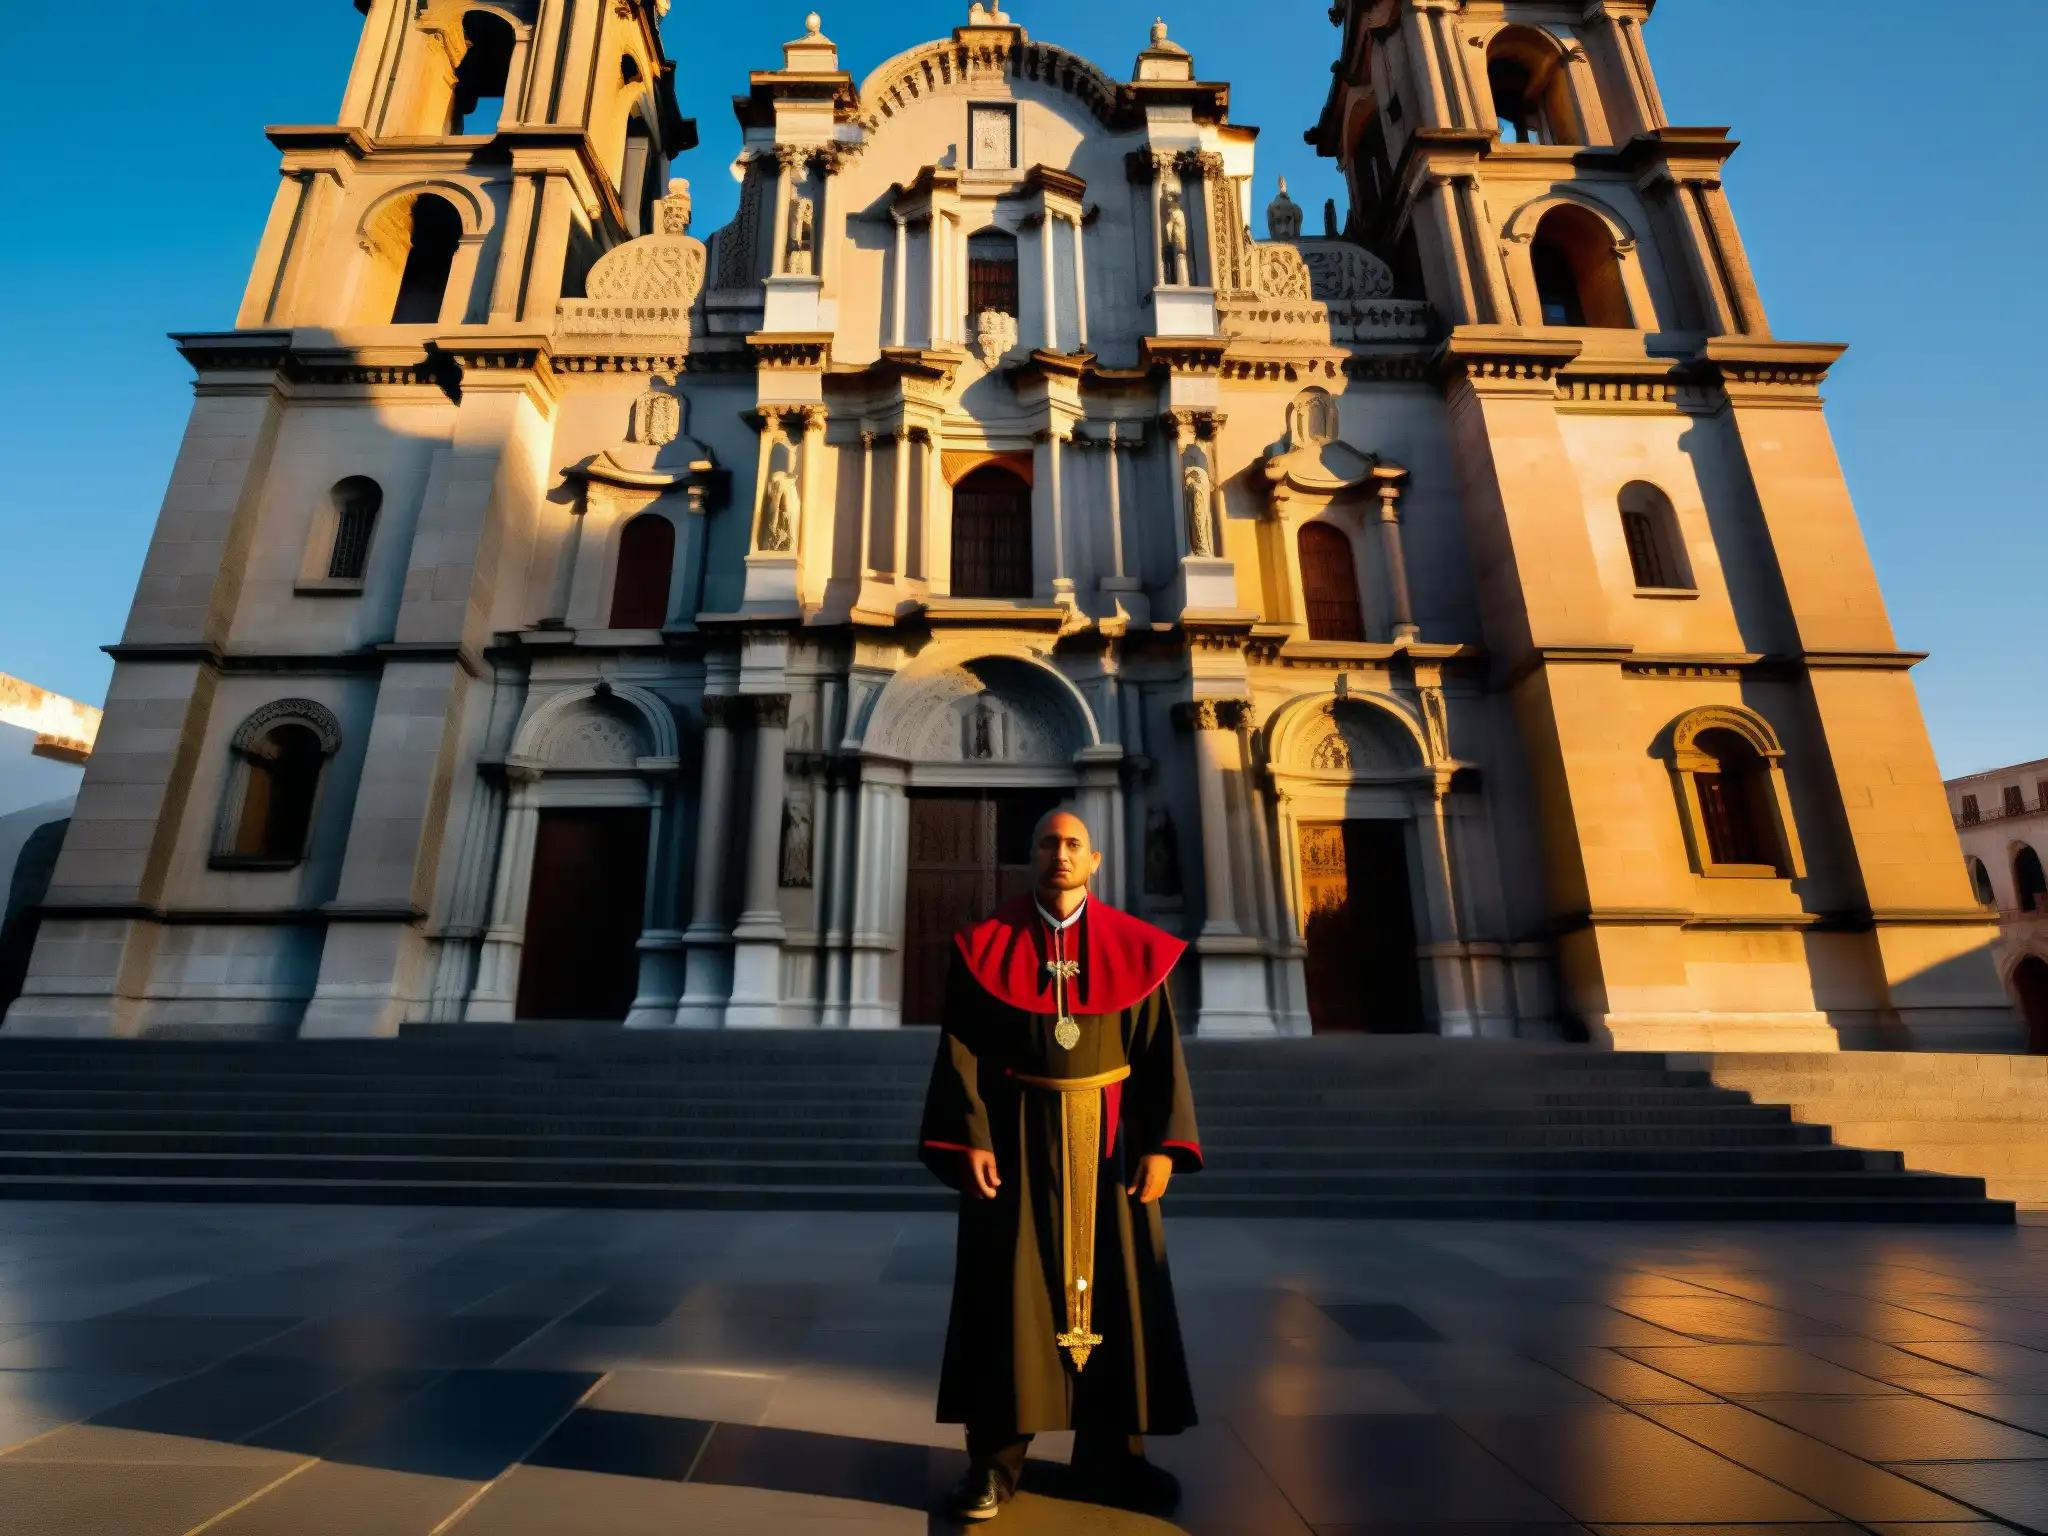 Imagen detallada del Monje de la Catedral en Ciudad de México al atardecer, con luces dramáticas y sombras largas en la fachada de la catedral